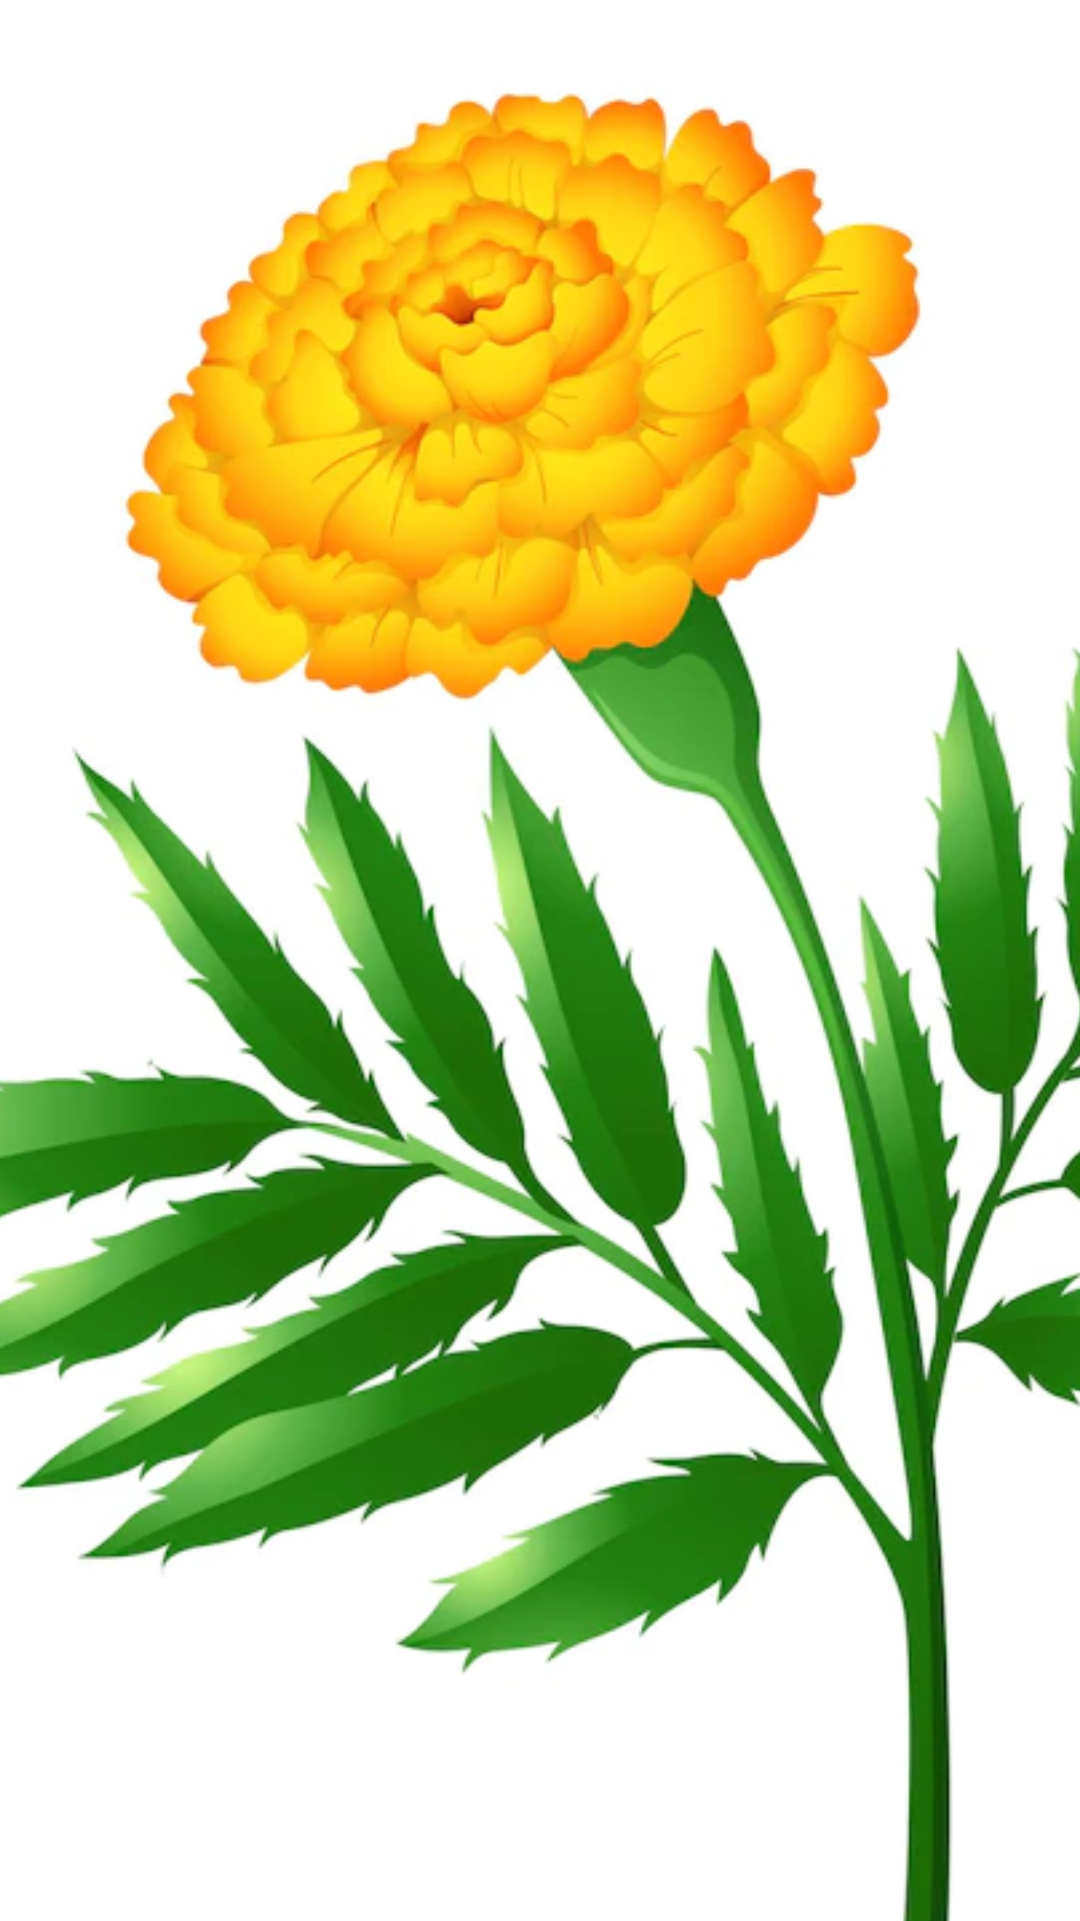 Marigold Flower: जानें गेंदे के फूल के फायदे